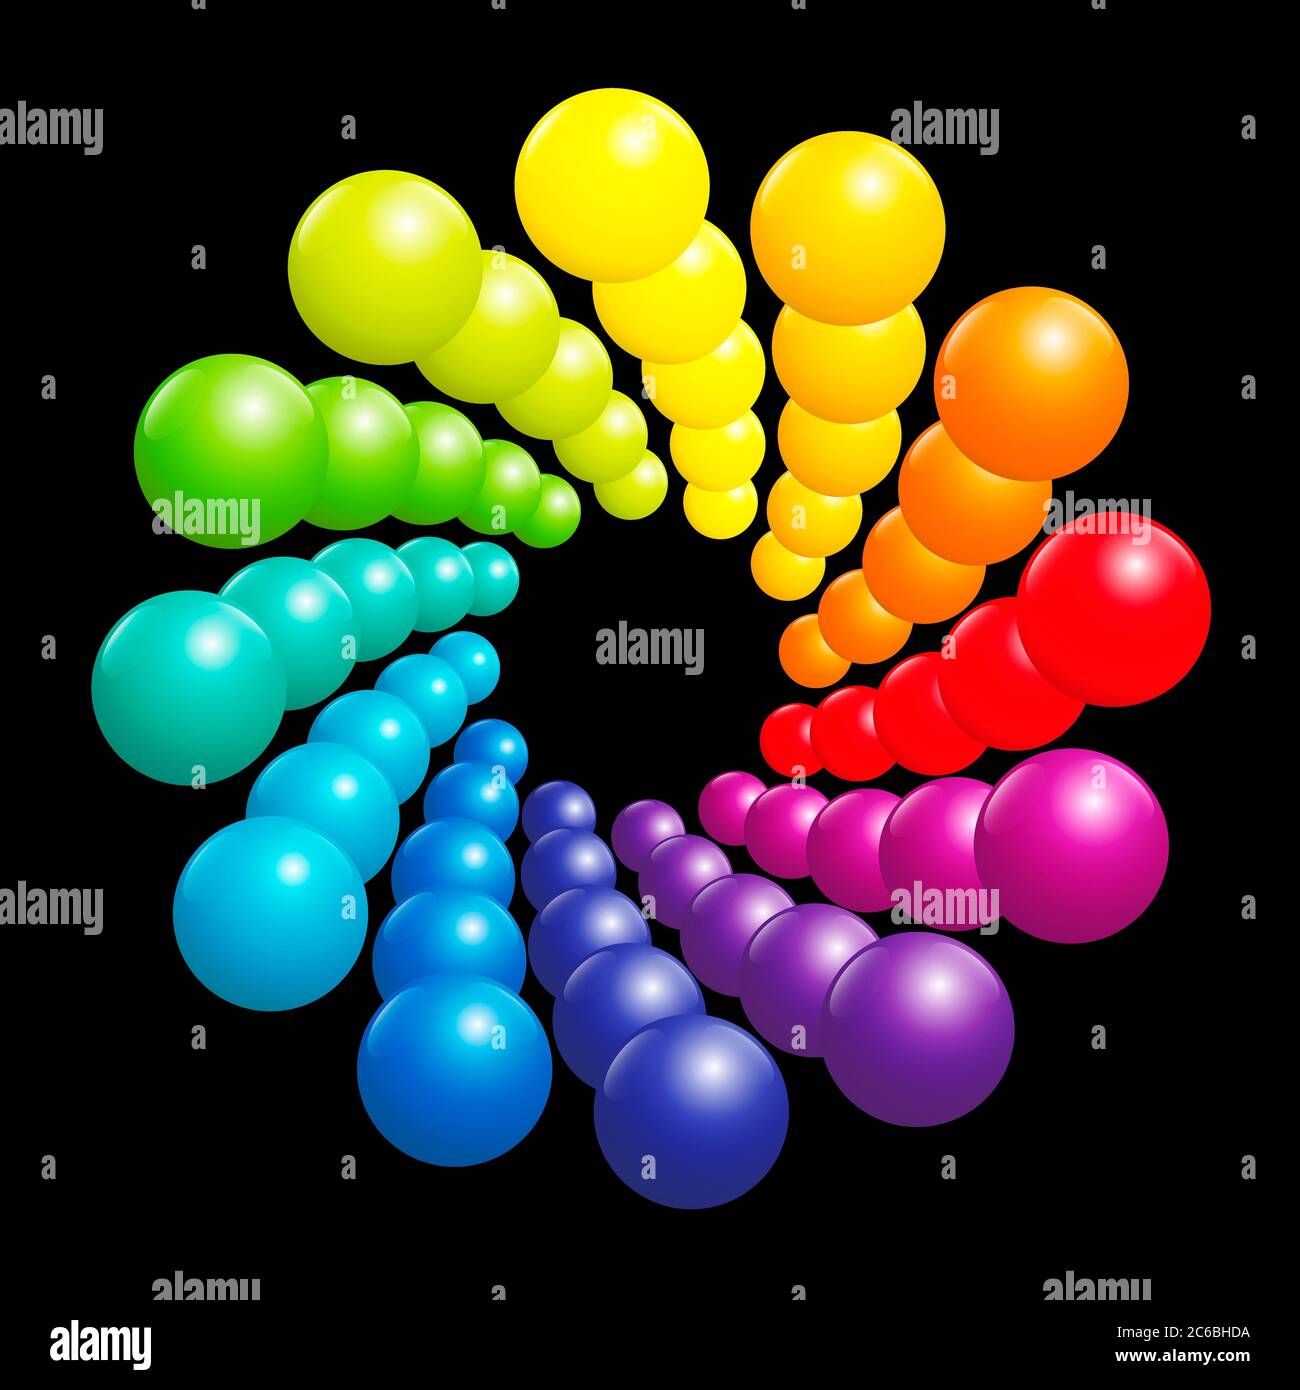 Bunte Spiralmuster, sehr glänzendes Regenbogenspektrum, gebildet von vielen dreidimensionalen farbigen Kugeln - Illustration auf schwarzem Hintergrund. Stockfoto